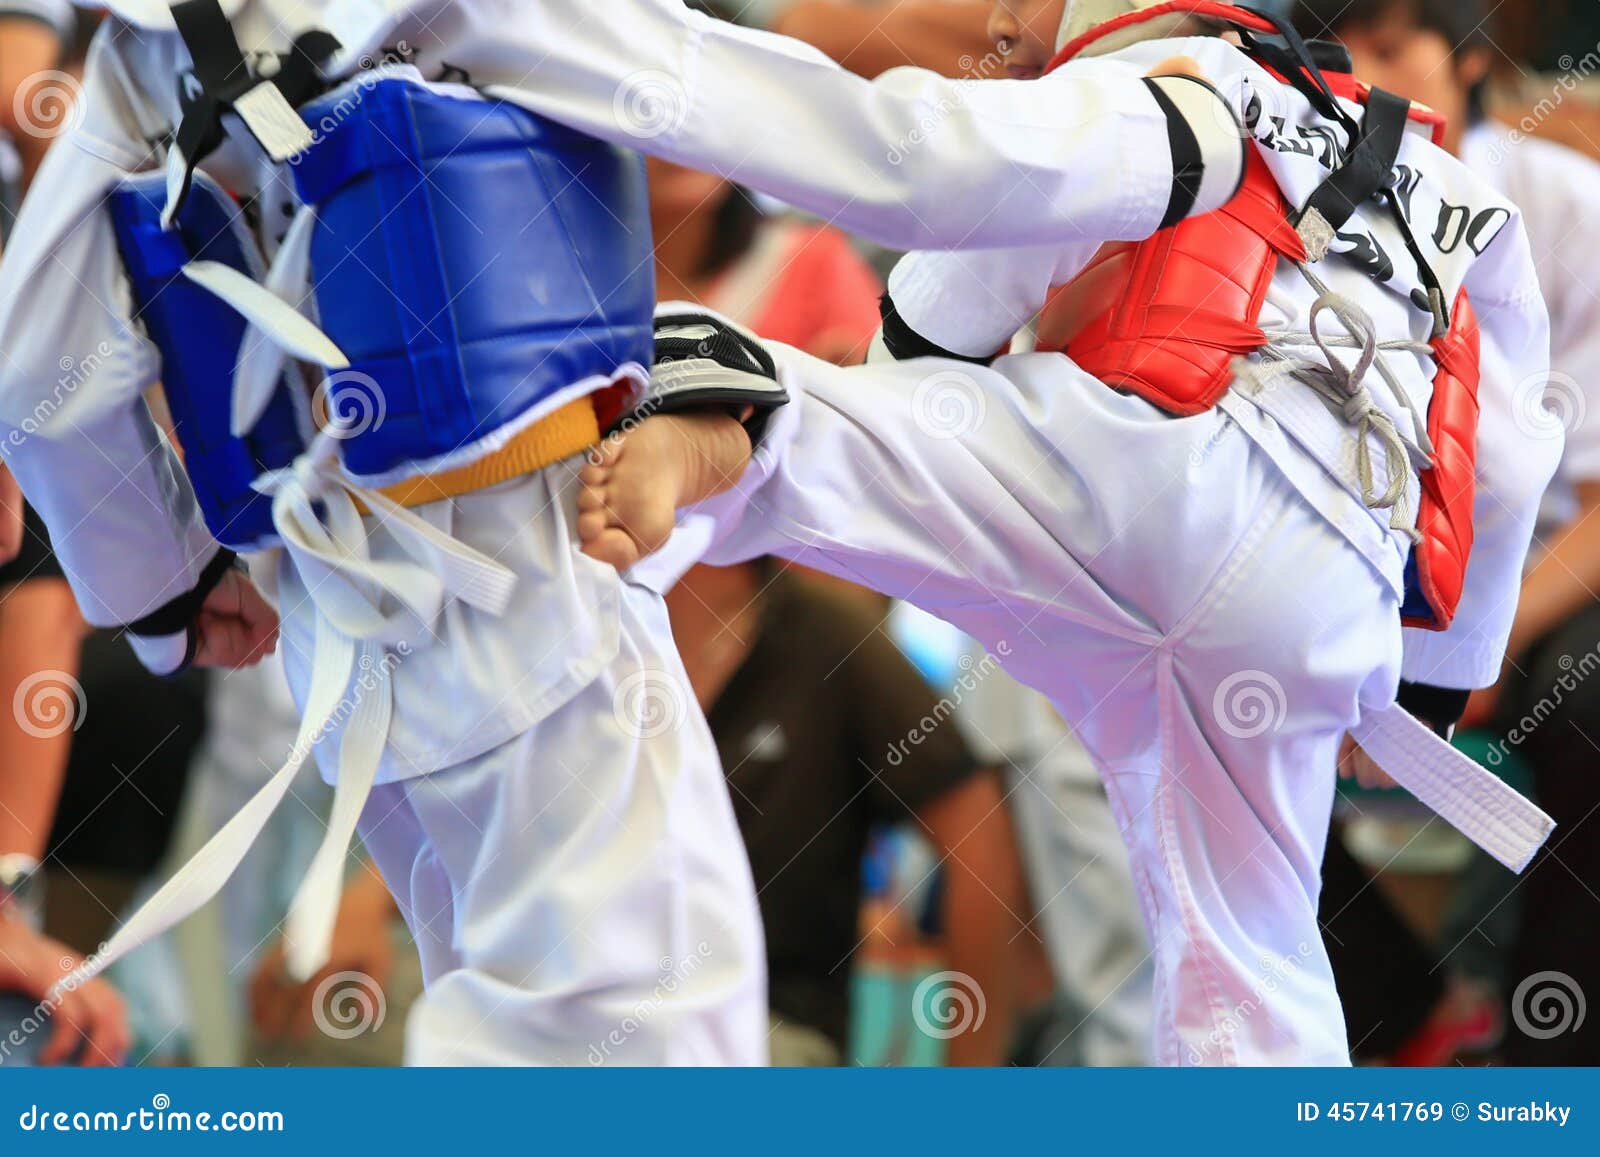 taekwondo athletes fighting on stage